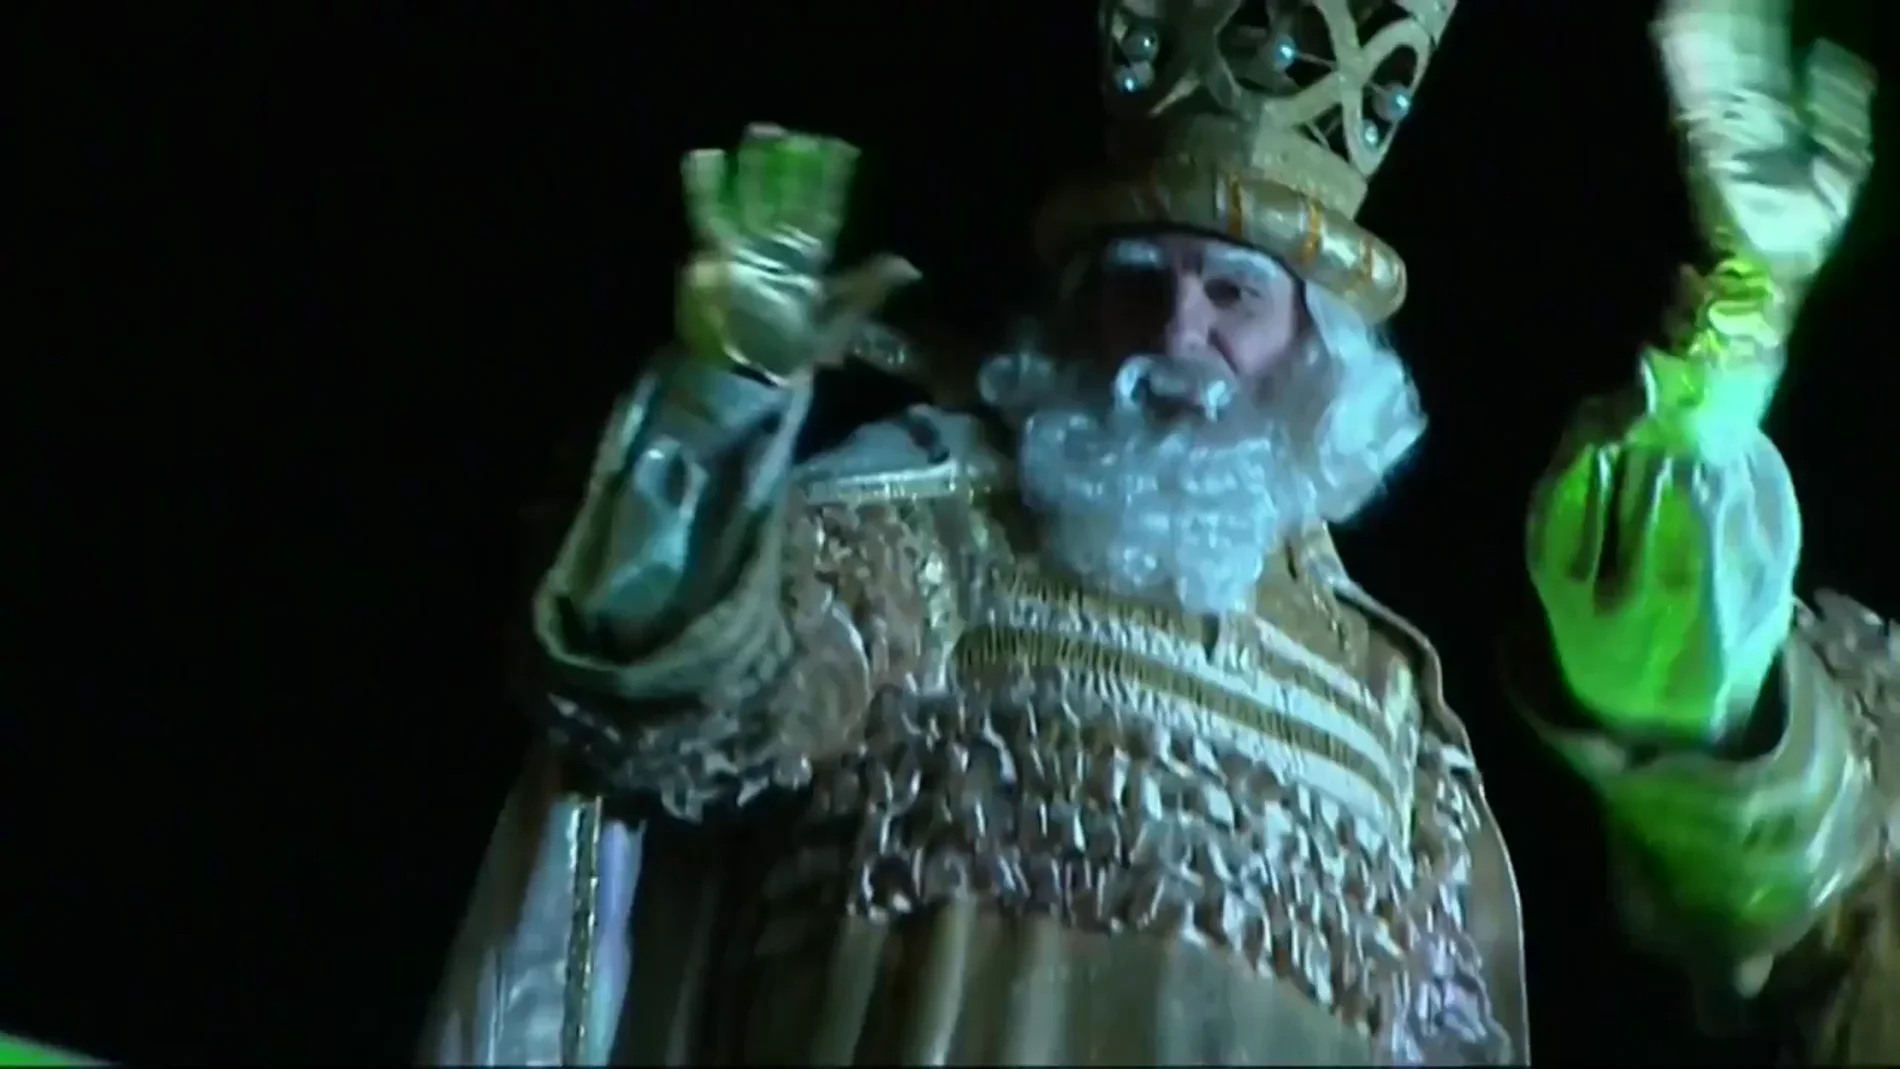 Cataluña celebrará la cabalgata de Reyes Magos a pesar del Covid-19